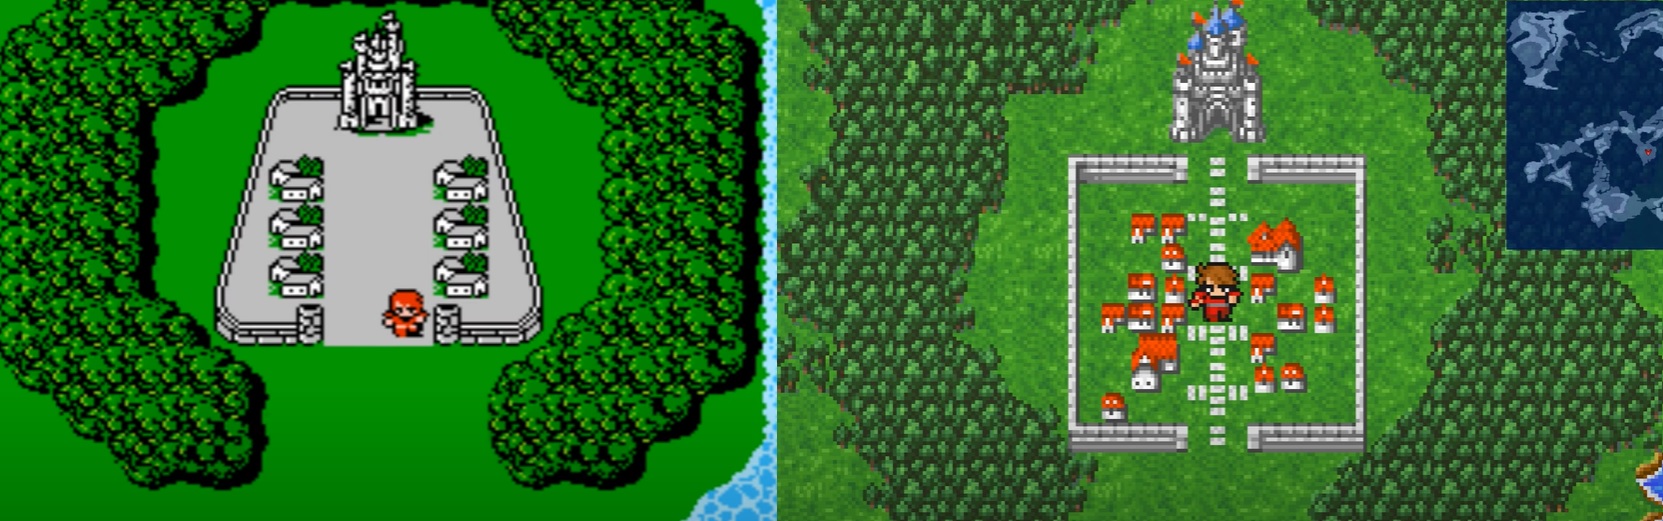 Os campos de Cornelia no jogo original de NES (esquerda) e na nova versão de PC (direita)